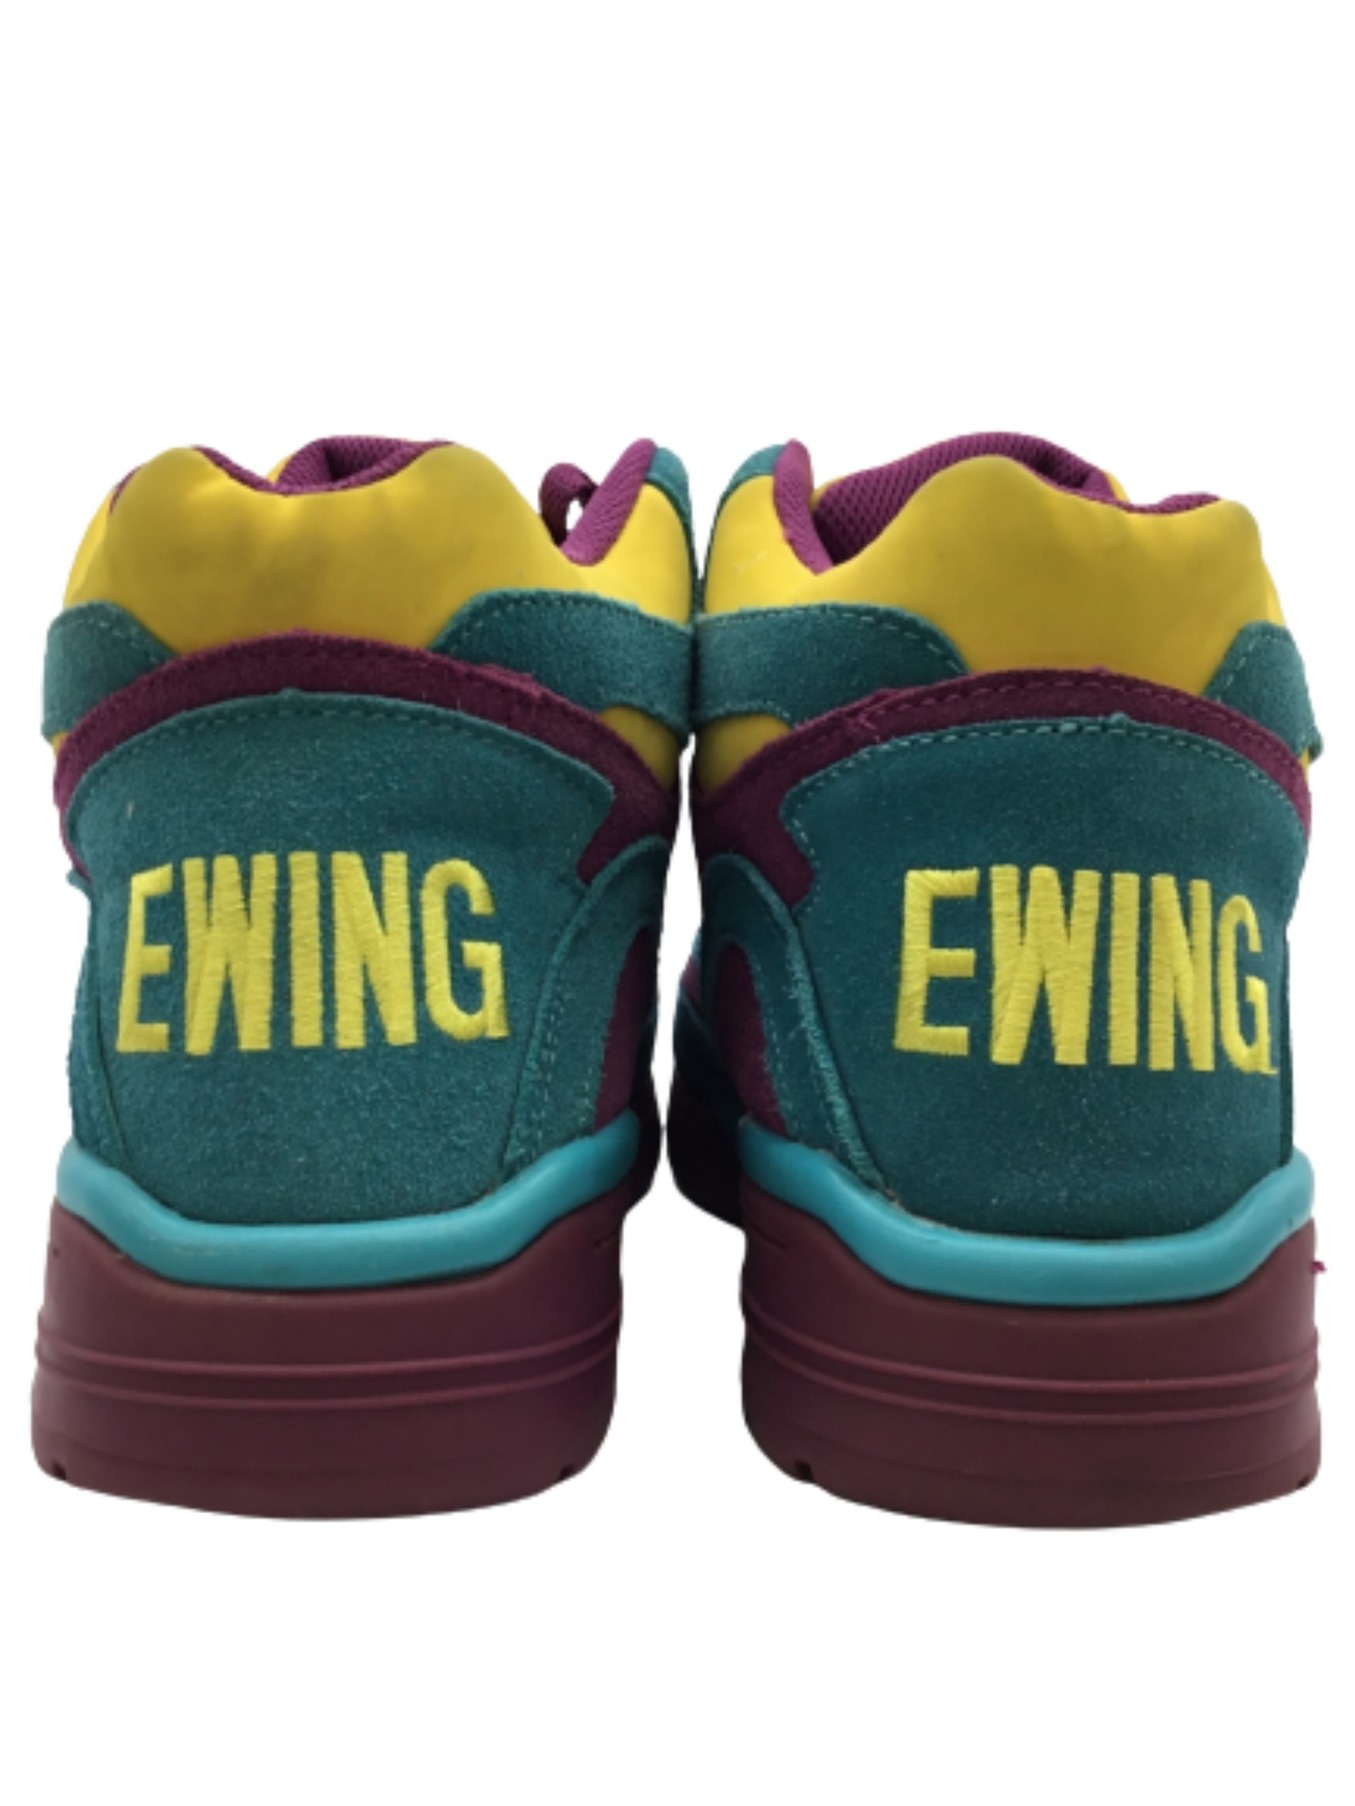 PATRICK EWING (パトリック ユーイング) EWING GUARD サイズ:US 9 1/2